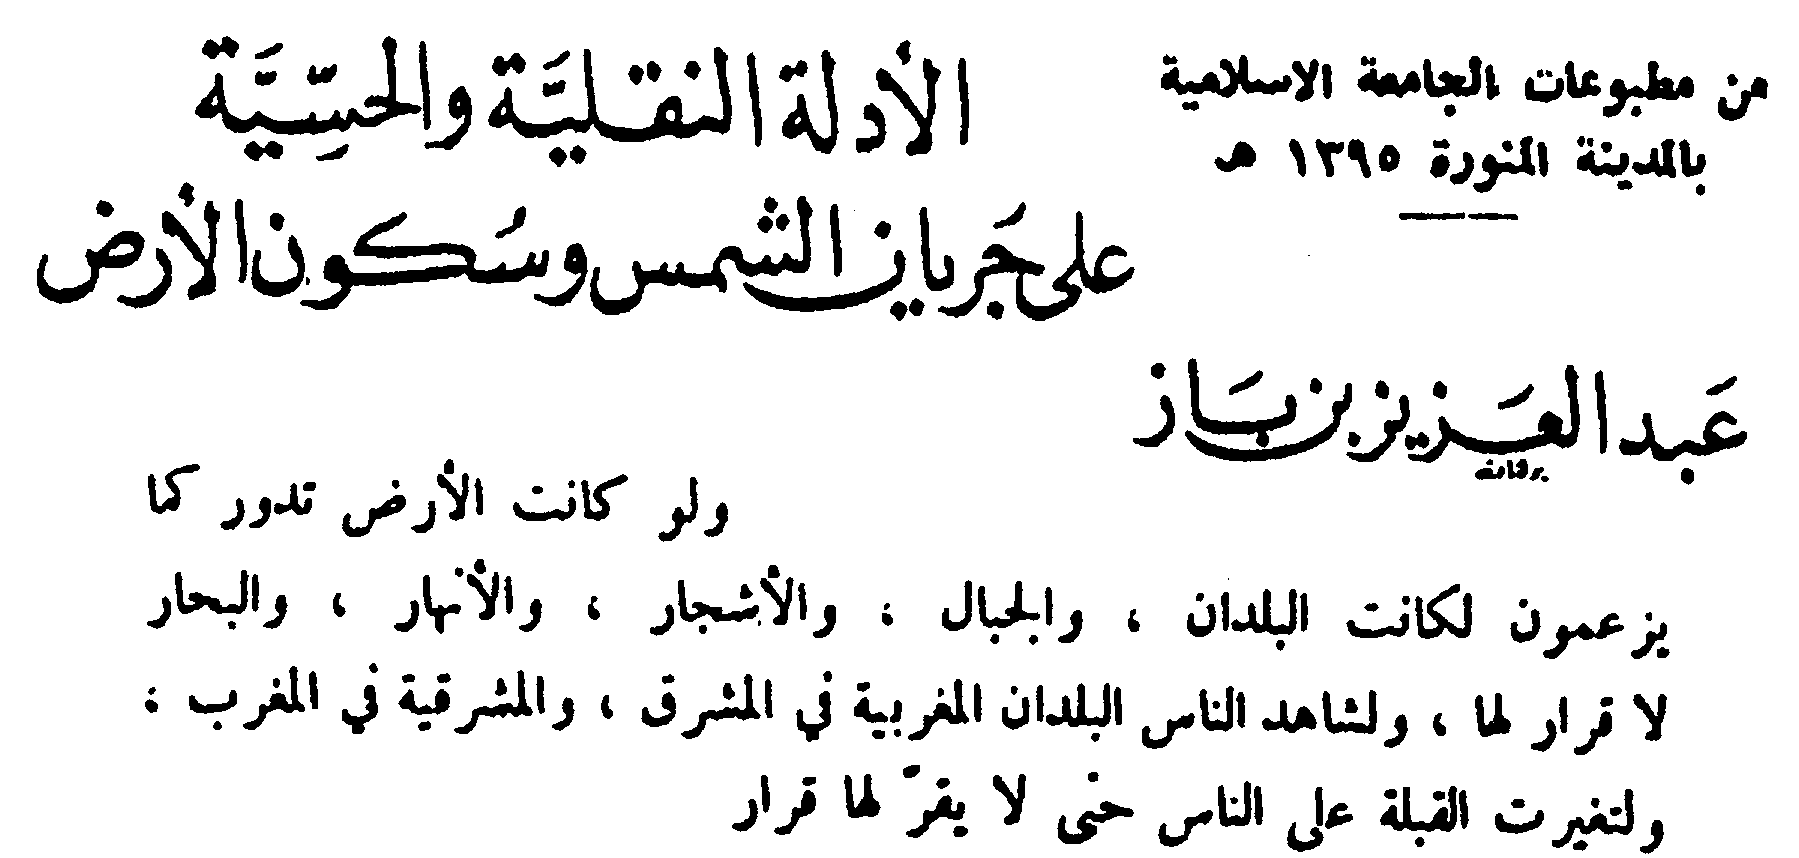 Arabic from Ben Baz's Book